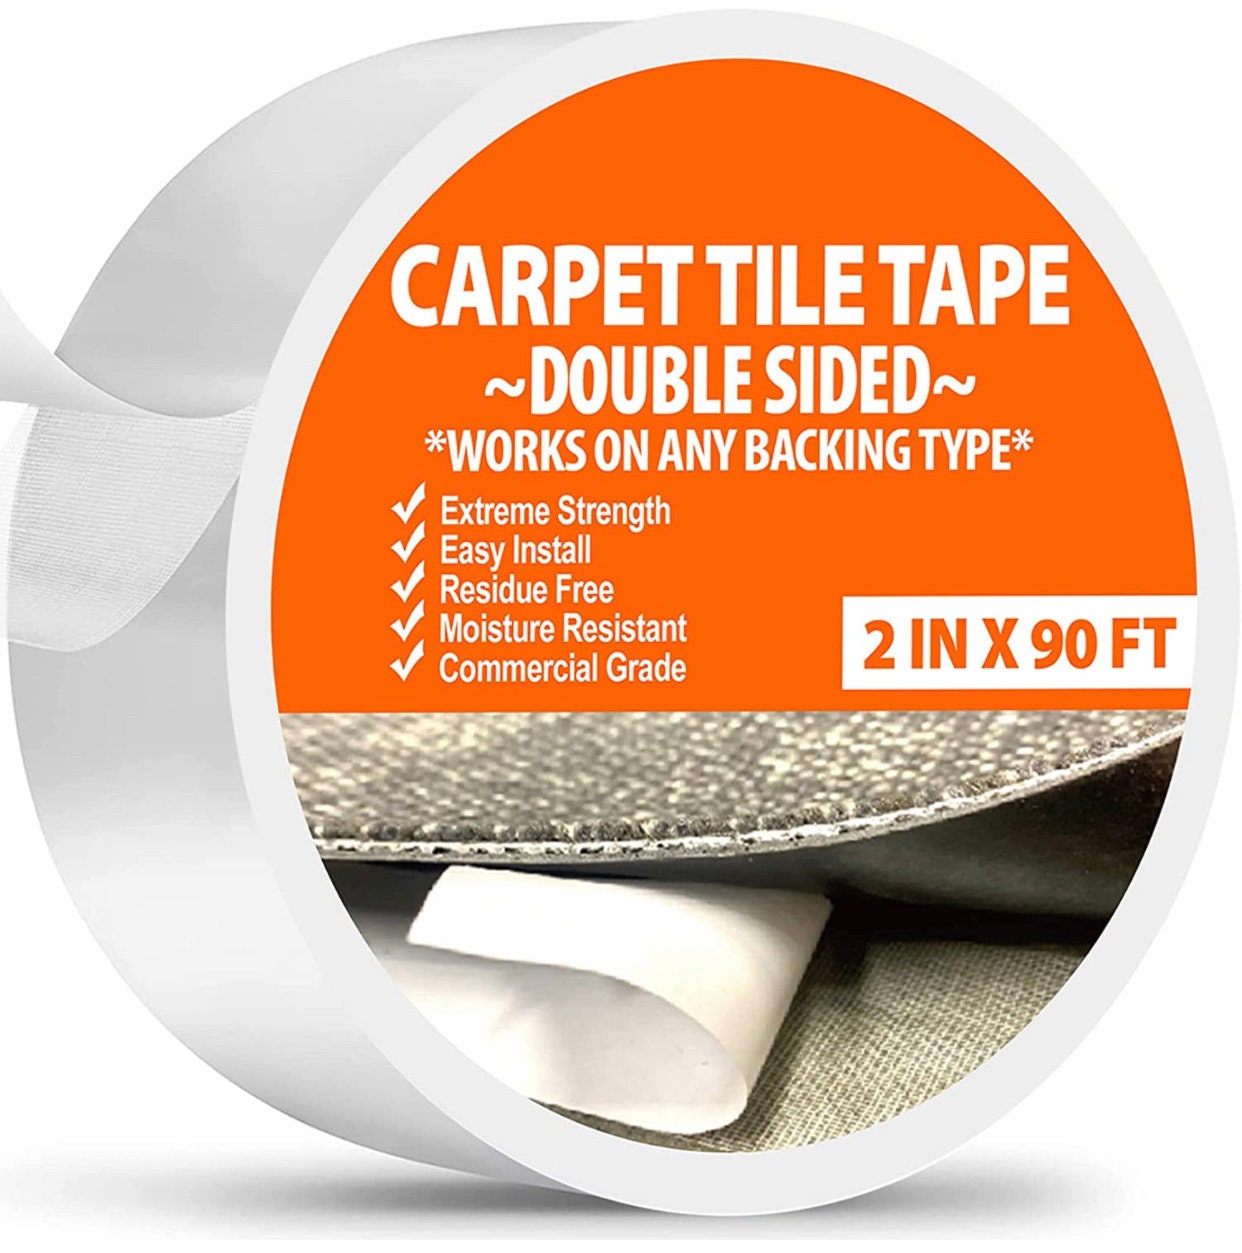 Scor-tape 1/4 Double Sided Adhesive Scor Tape Acid Free Double